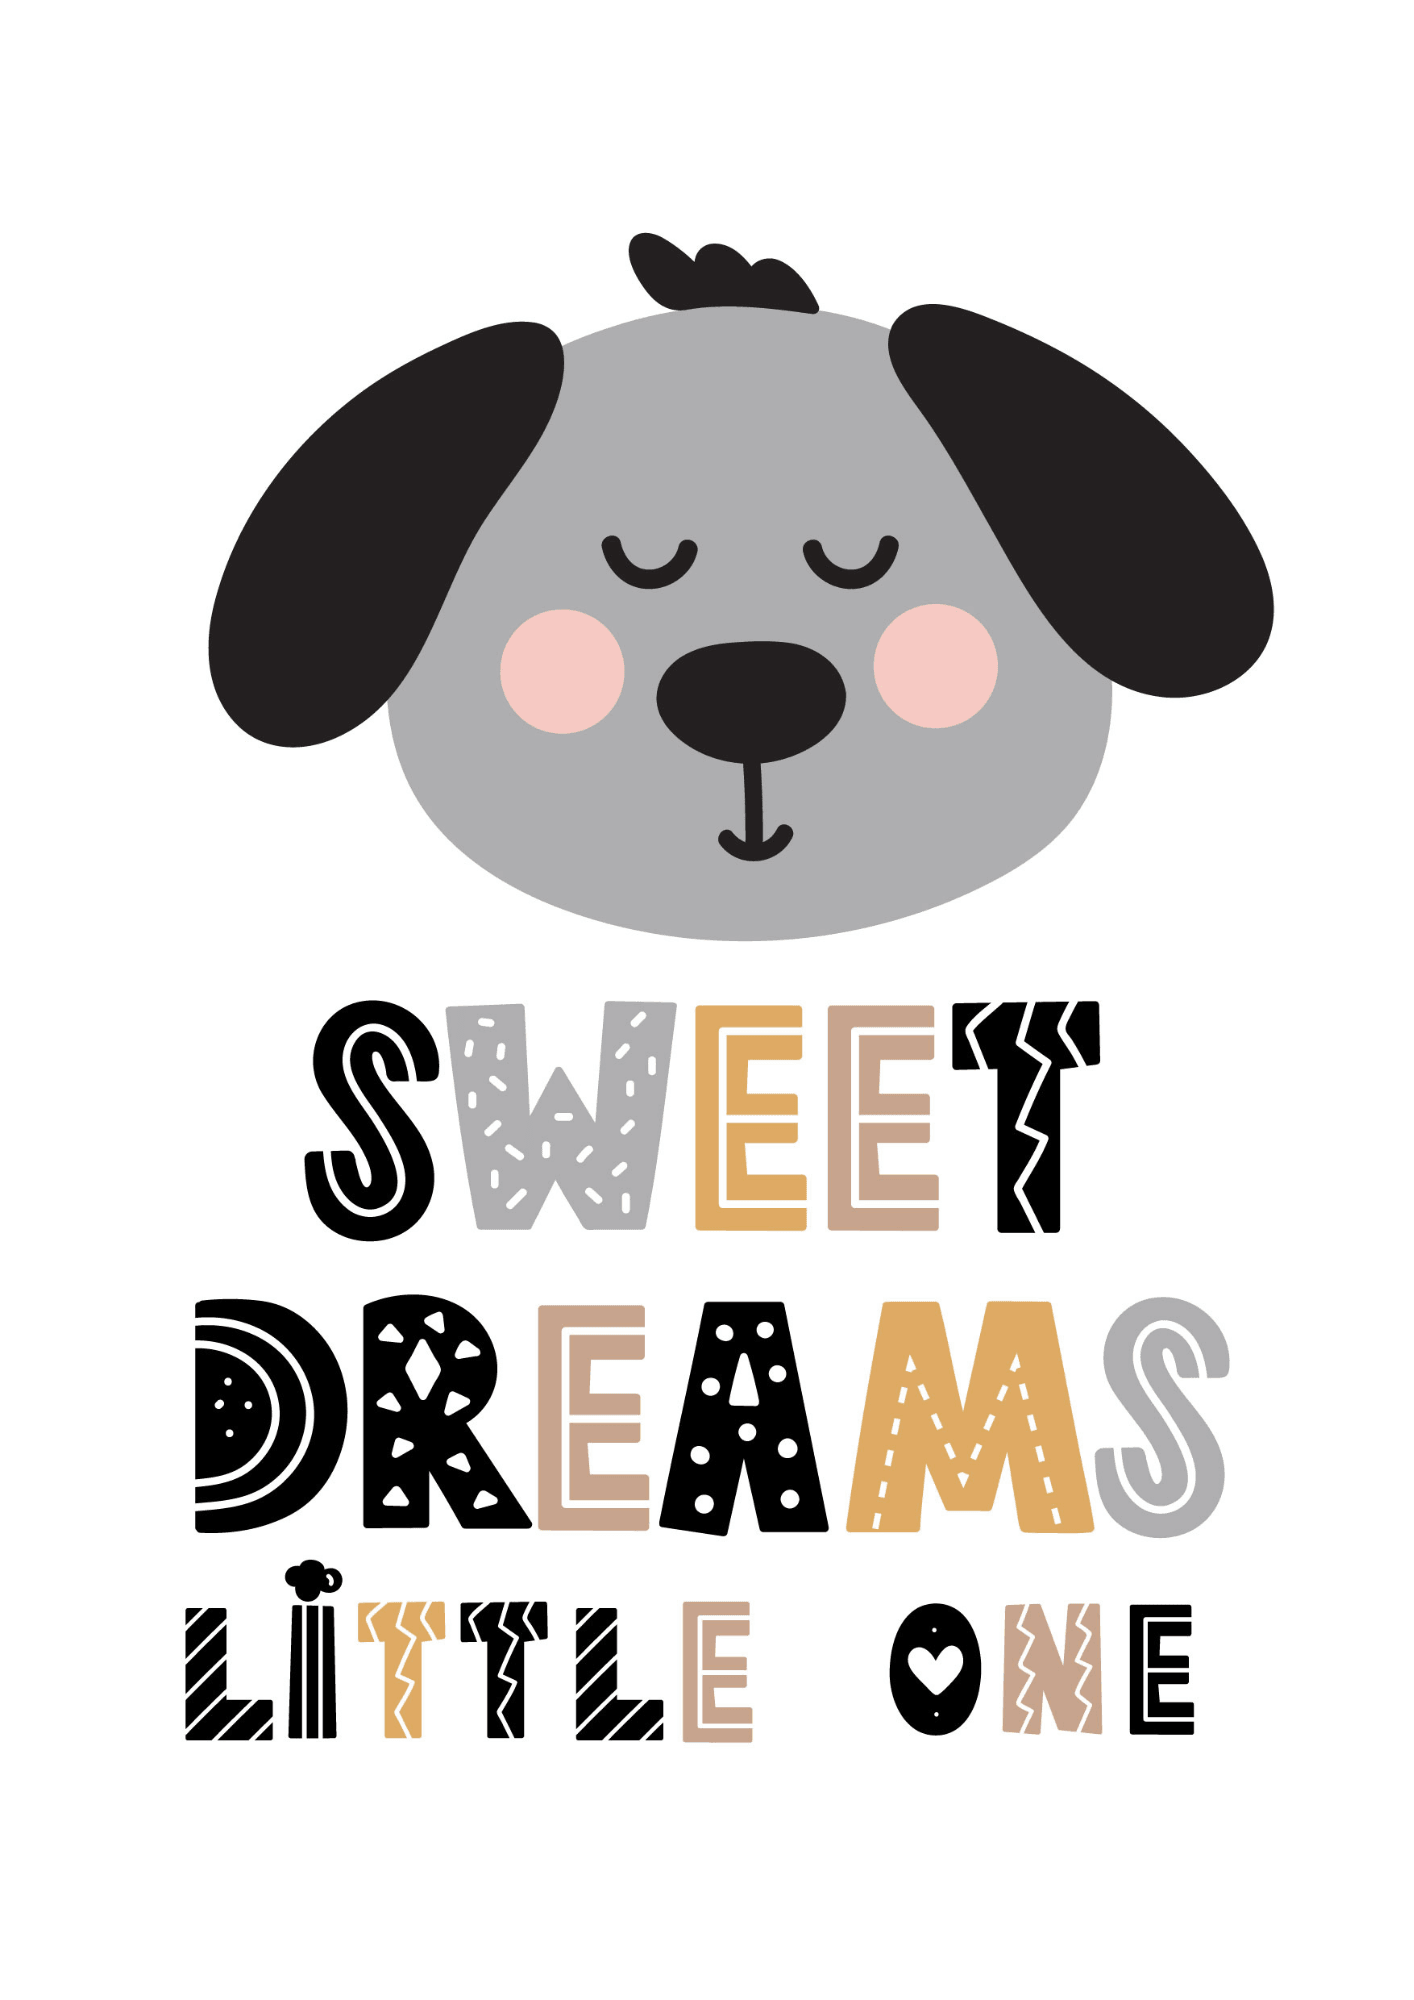 Sweet Dreams Little One - The Ditzy Dodo